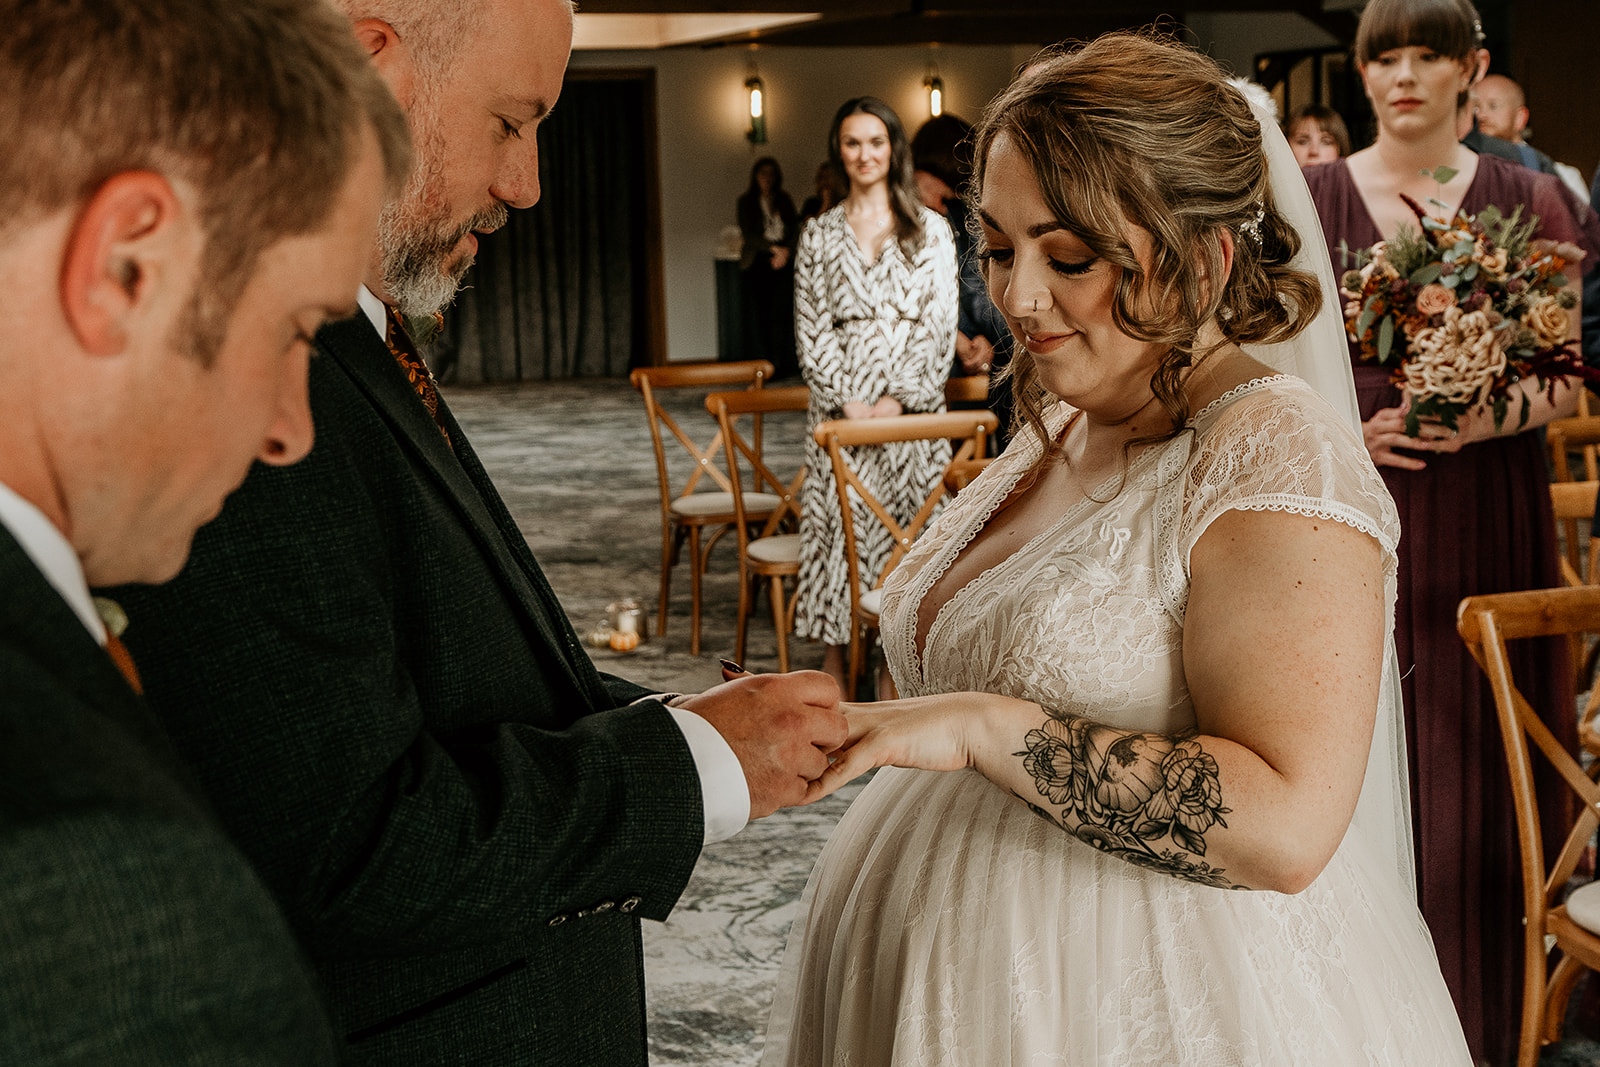 exchange of rings at Peak Edge Hotel wedding